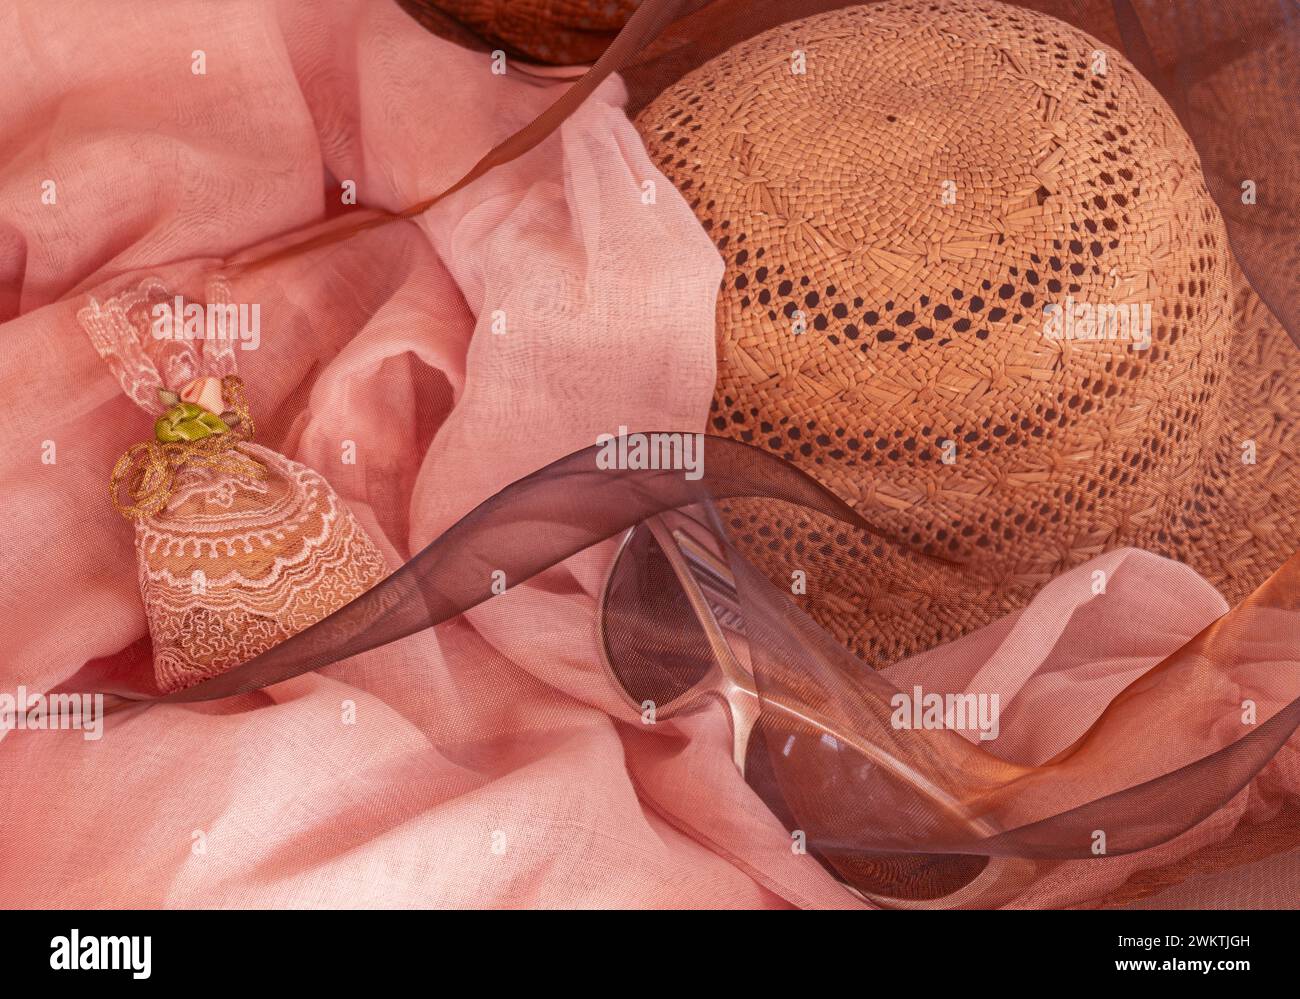 Romantischer rosafarbener Sonnenhut, Sonnenbrille, Organdystoff und Brokatbeutel, wie für Urlaub, Entspannung oder Feier im femininen Stil. Stockfoto